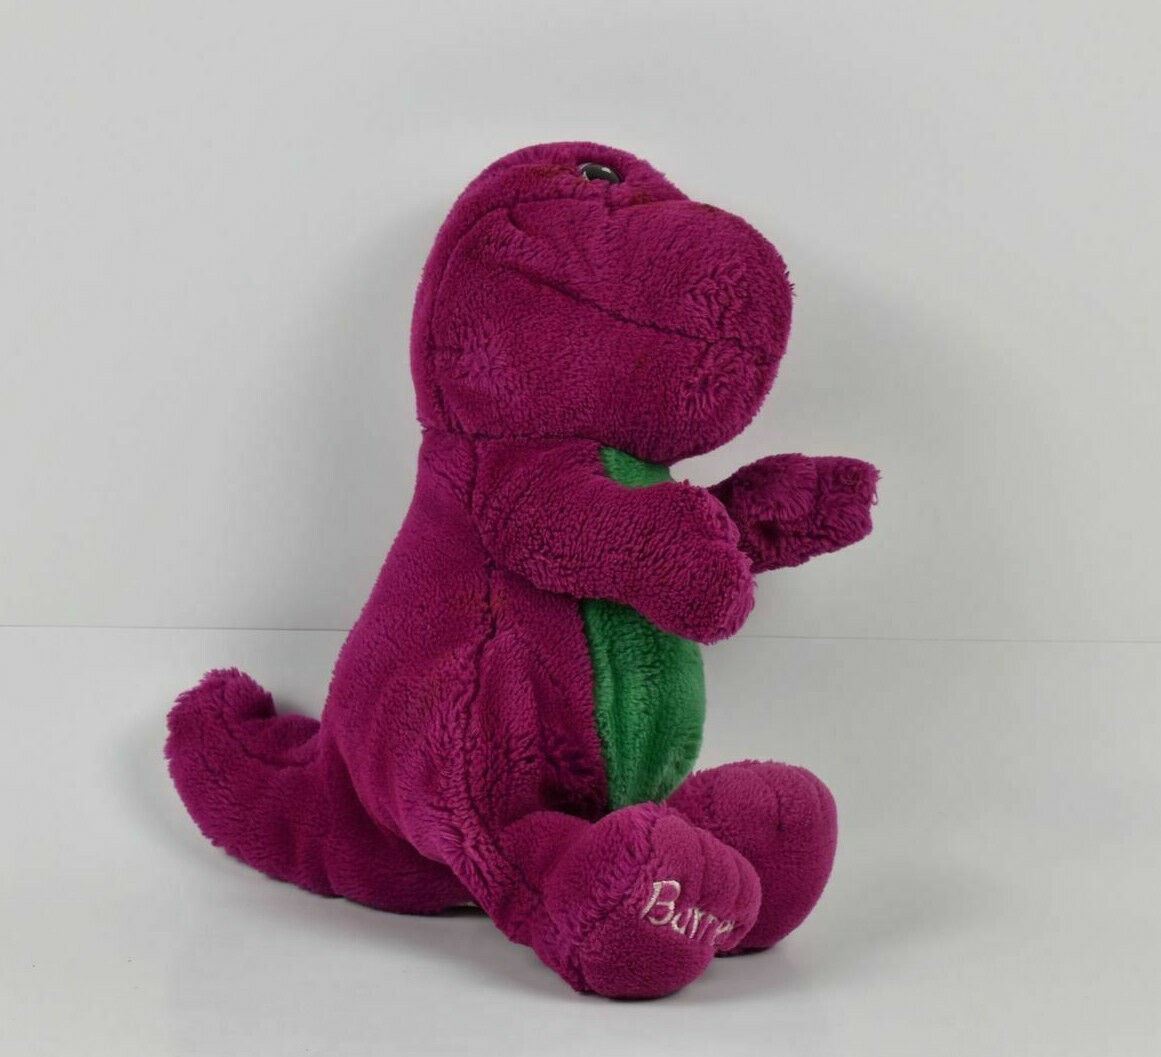 Barney Vintage 1994 Stuffed Purple Dinosaur Used